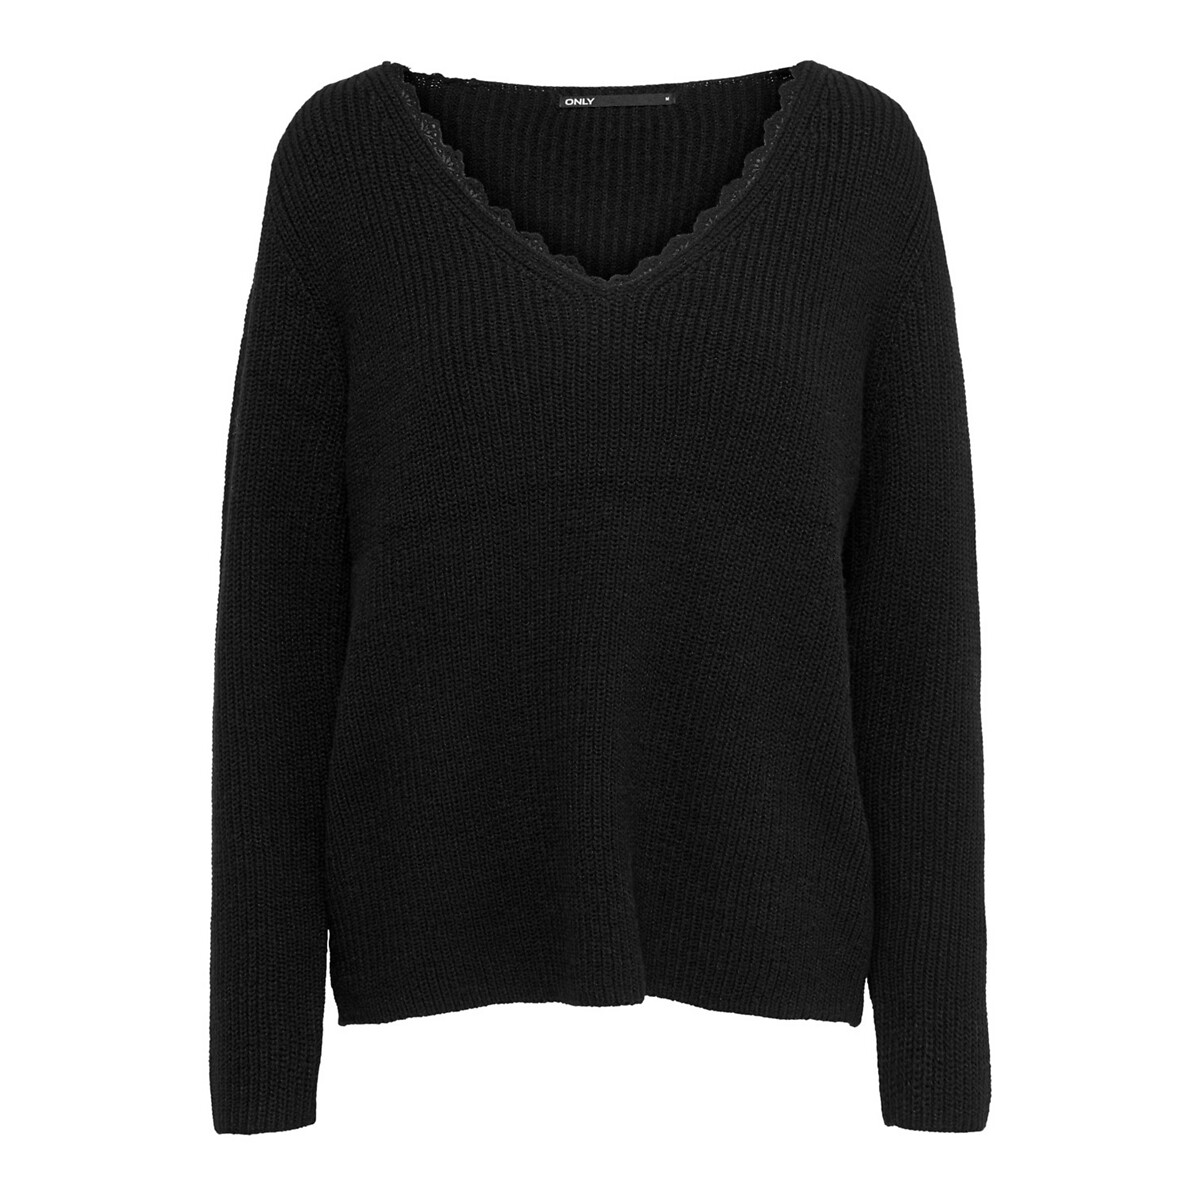 Пуловер La Redoute С V-образным вырезом из плотного трикотажа XS черный, размер XS - фото 5